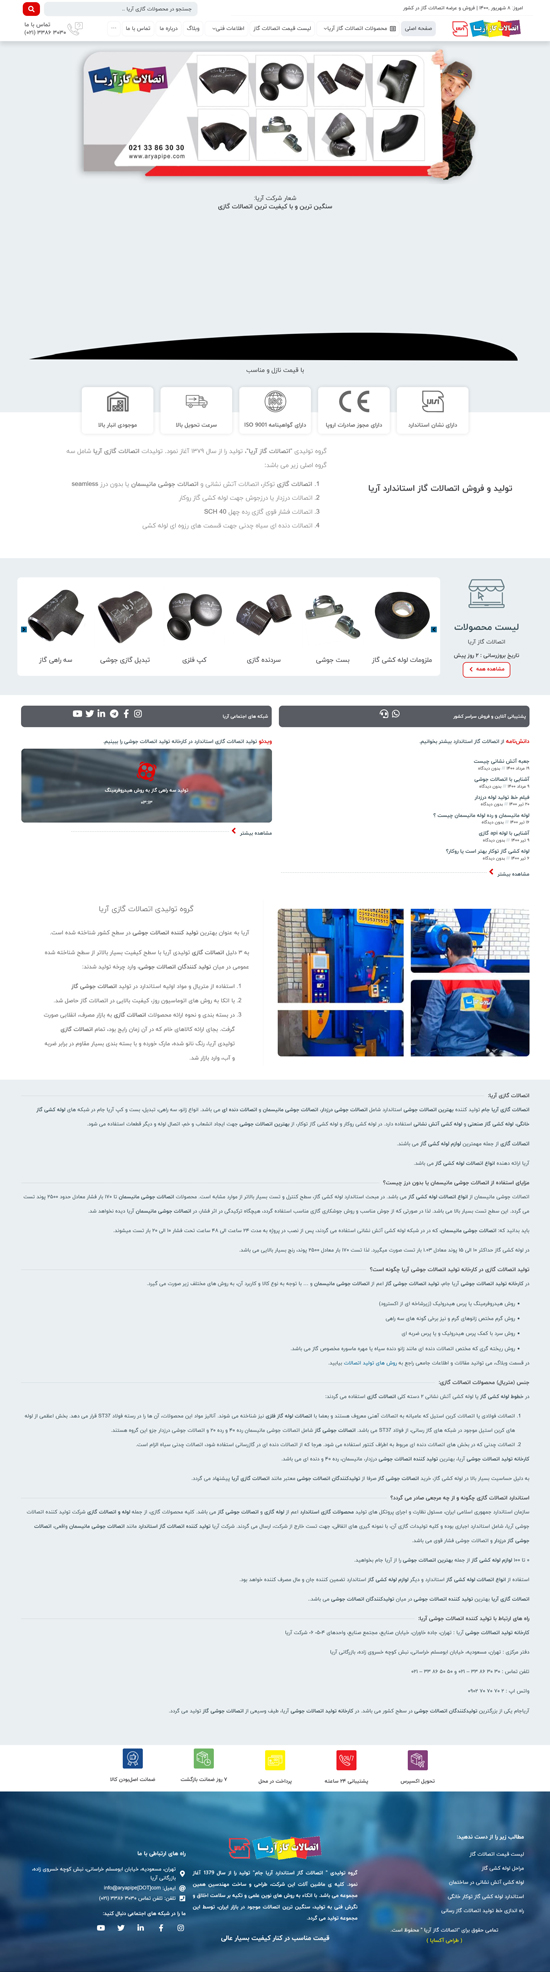 طراحی سایت فروشگاه اتصالات گاز آریا